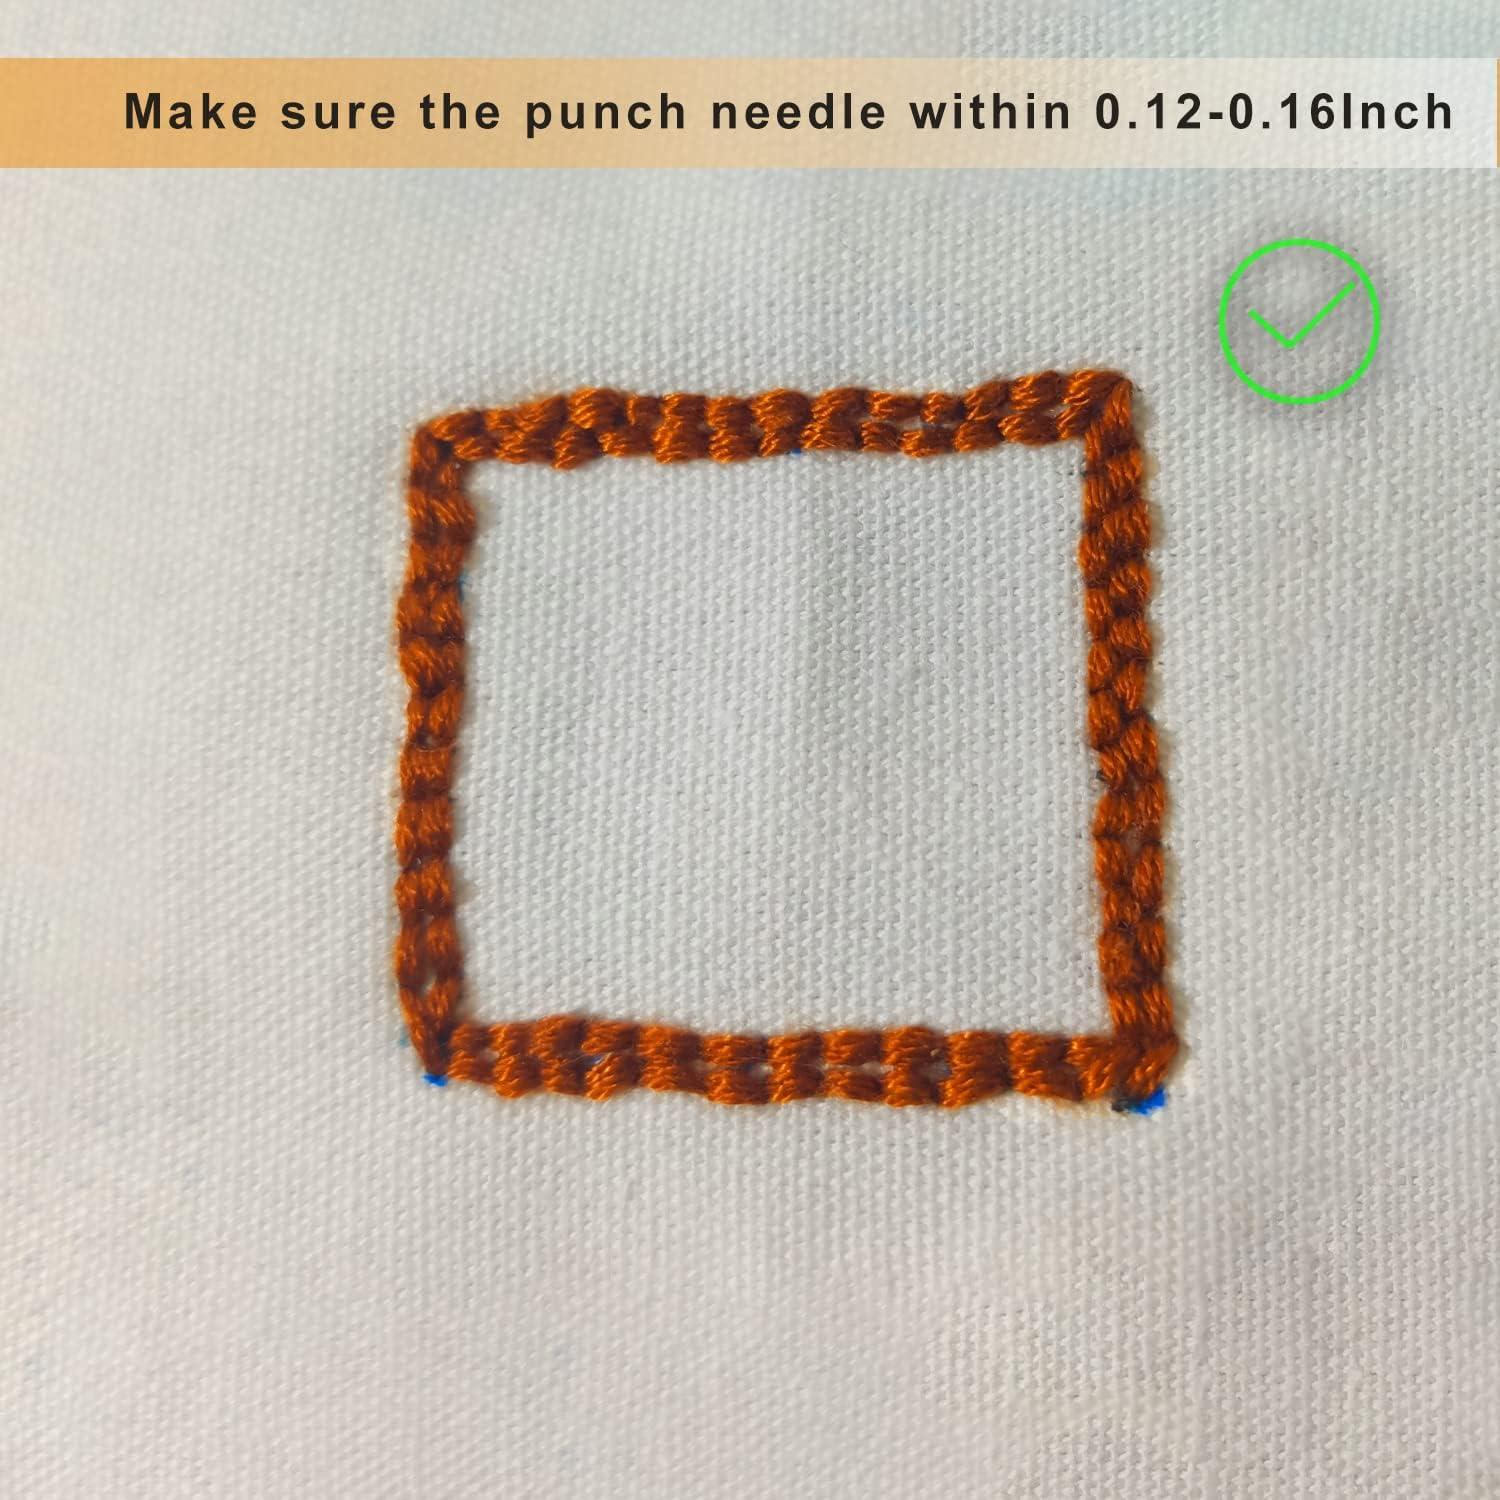 Fern beginner punch needle kit – Whole Punching